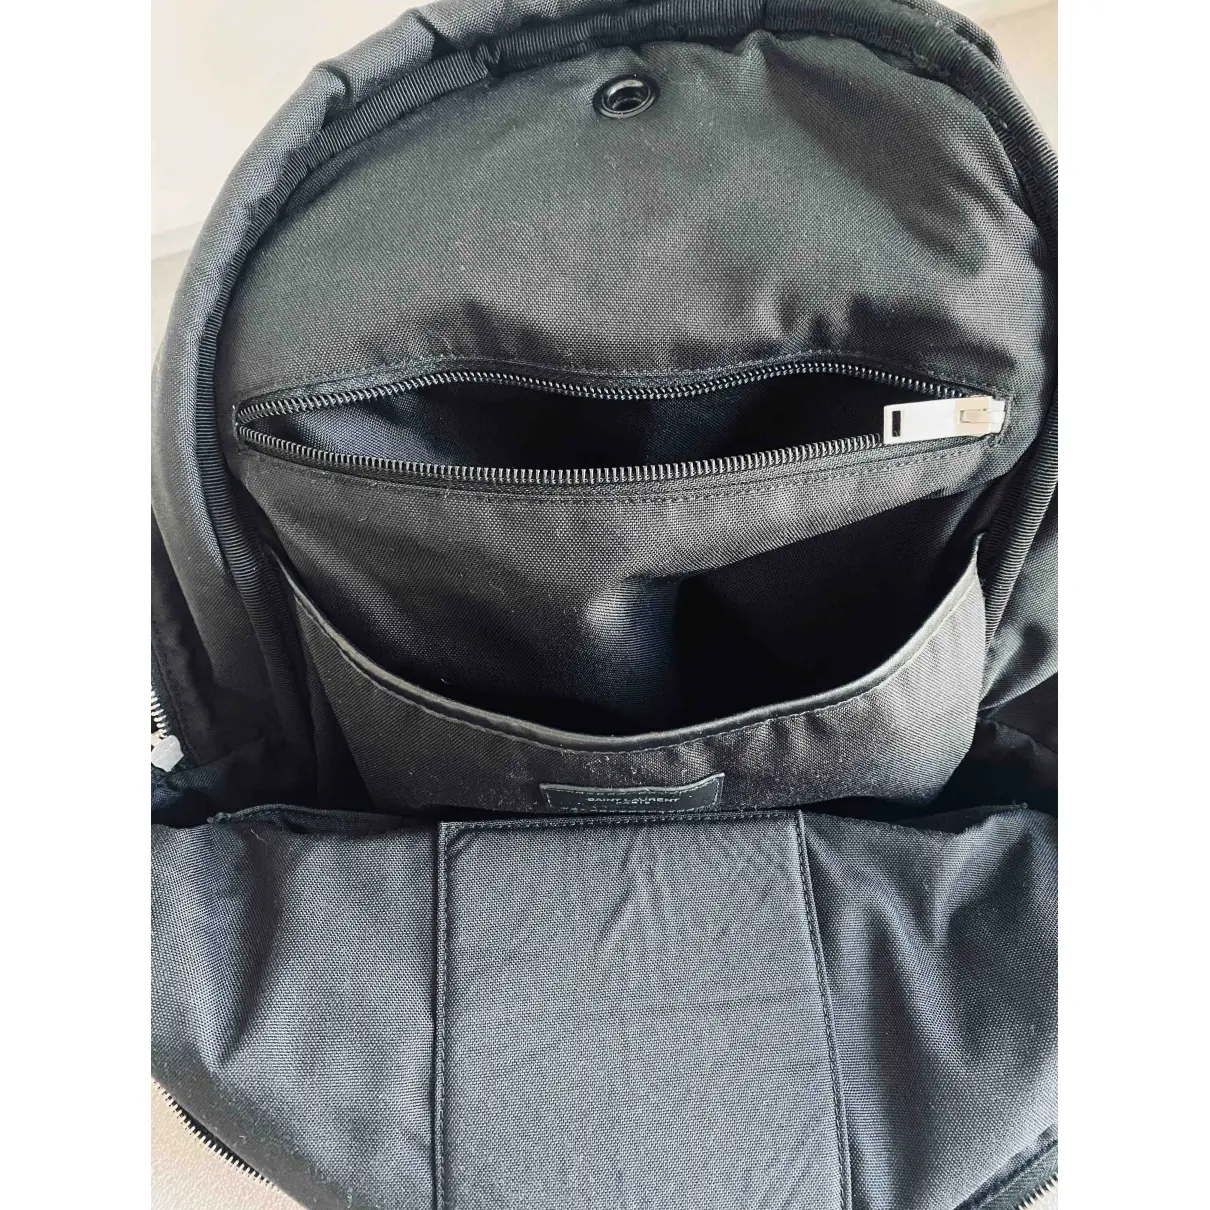 City Backpack satchel Saint Laurent